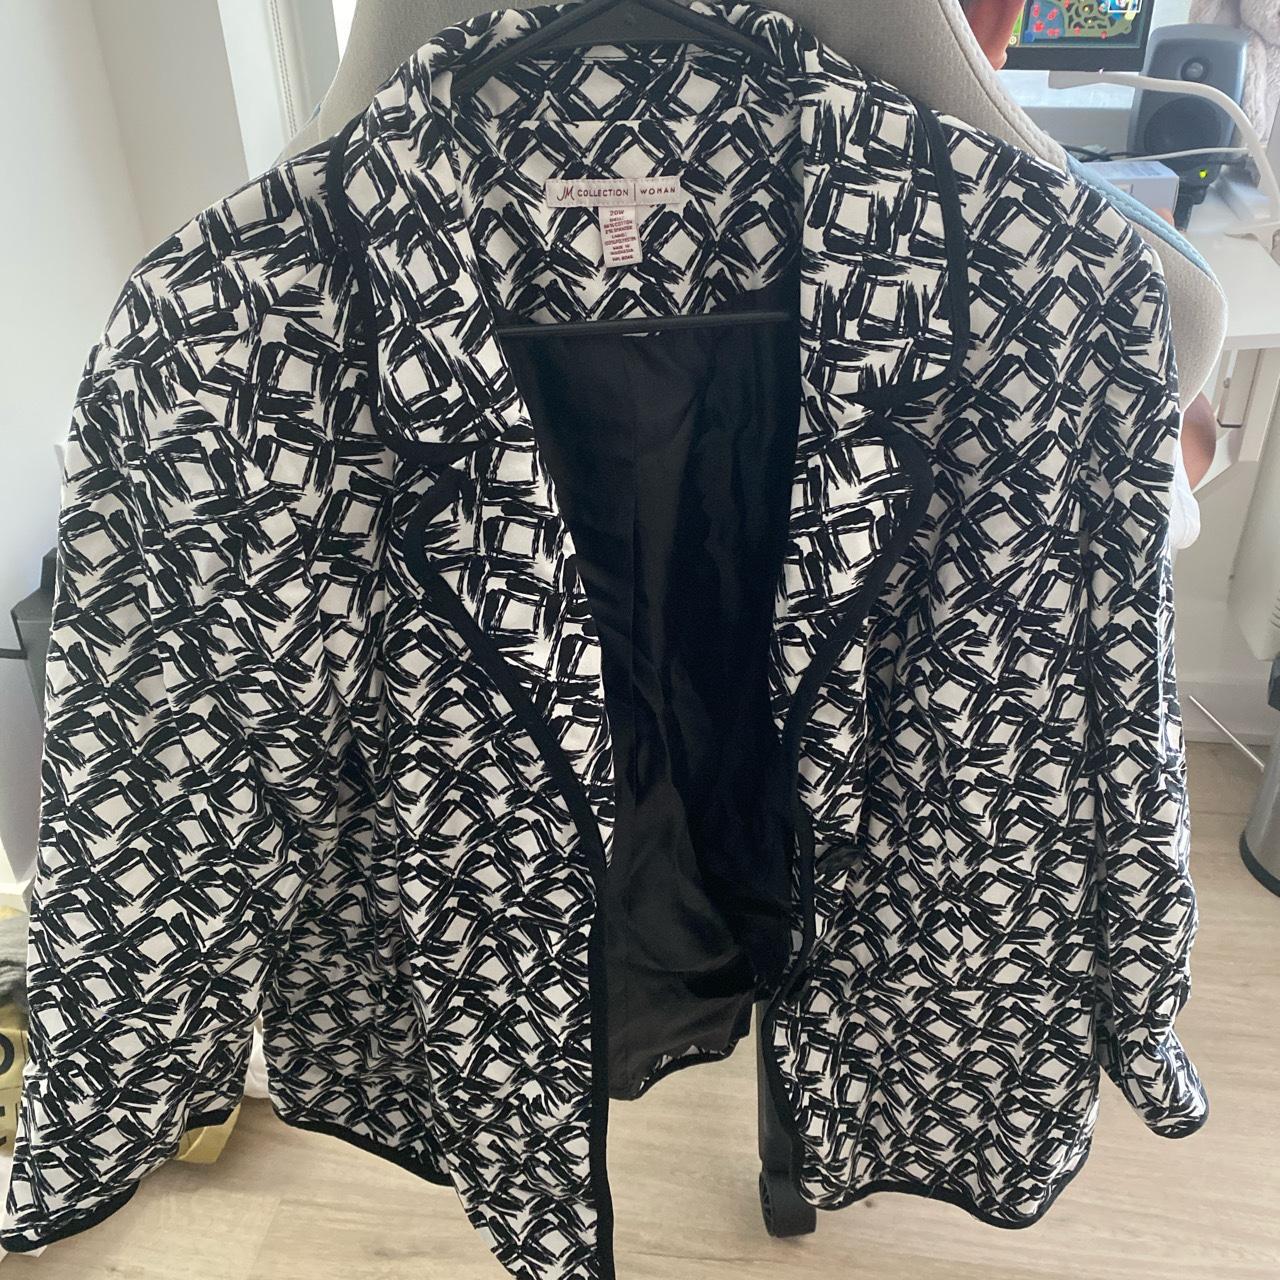 JM collection Vintige jacket，wear 2 times after I